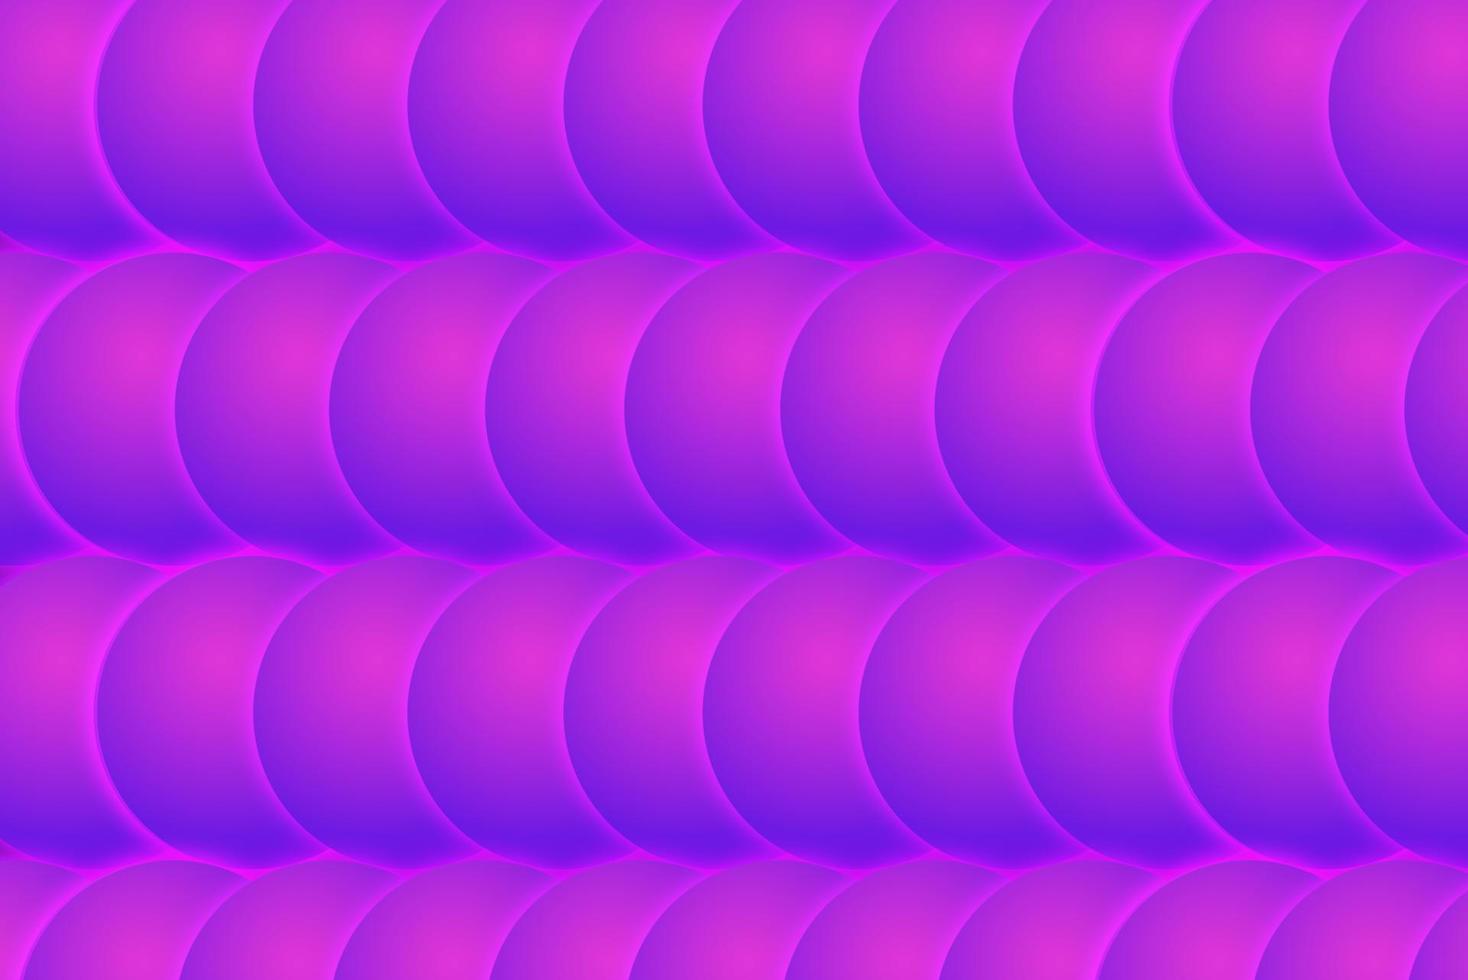 Vektor nahtlose Muster. moderne, stilvolle Textur mit violetten Farben. sich wiederholendes geometrisches Dreiecksgitter. einfaches Grafikdesign. trendige hipster heilige geometrie.